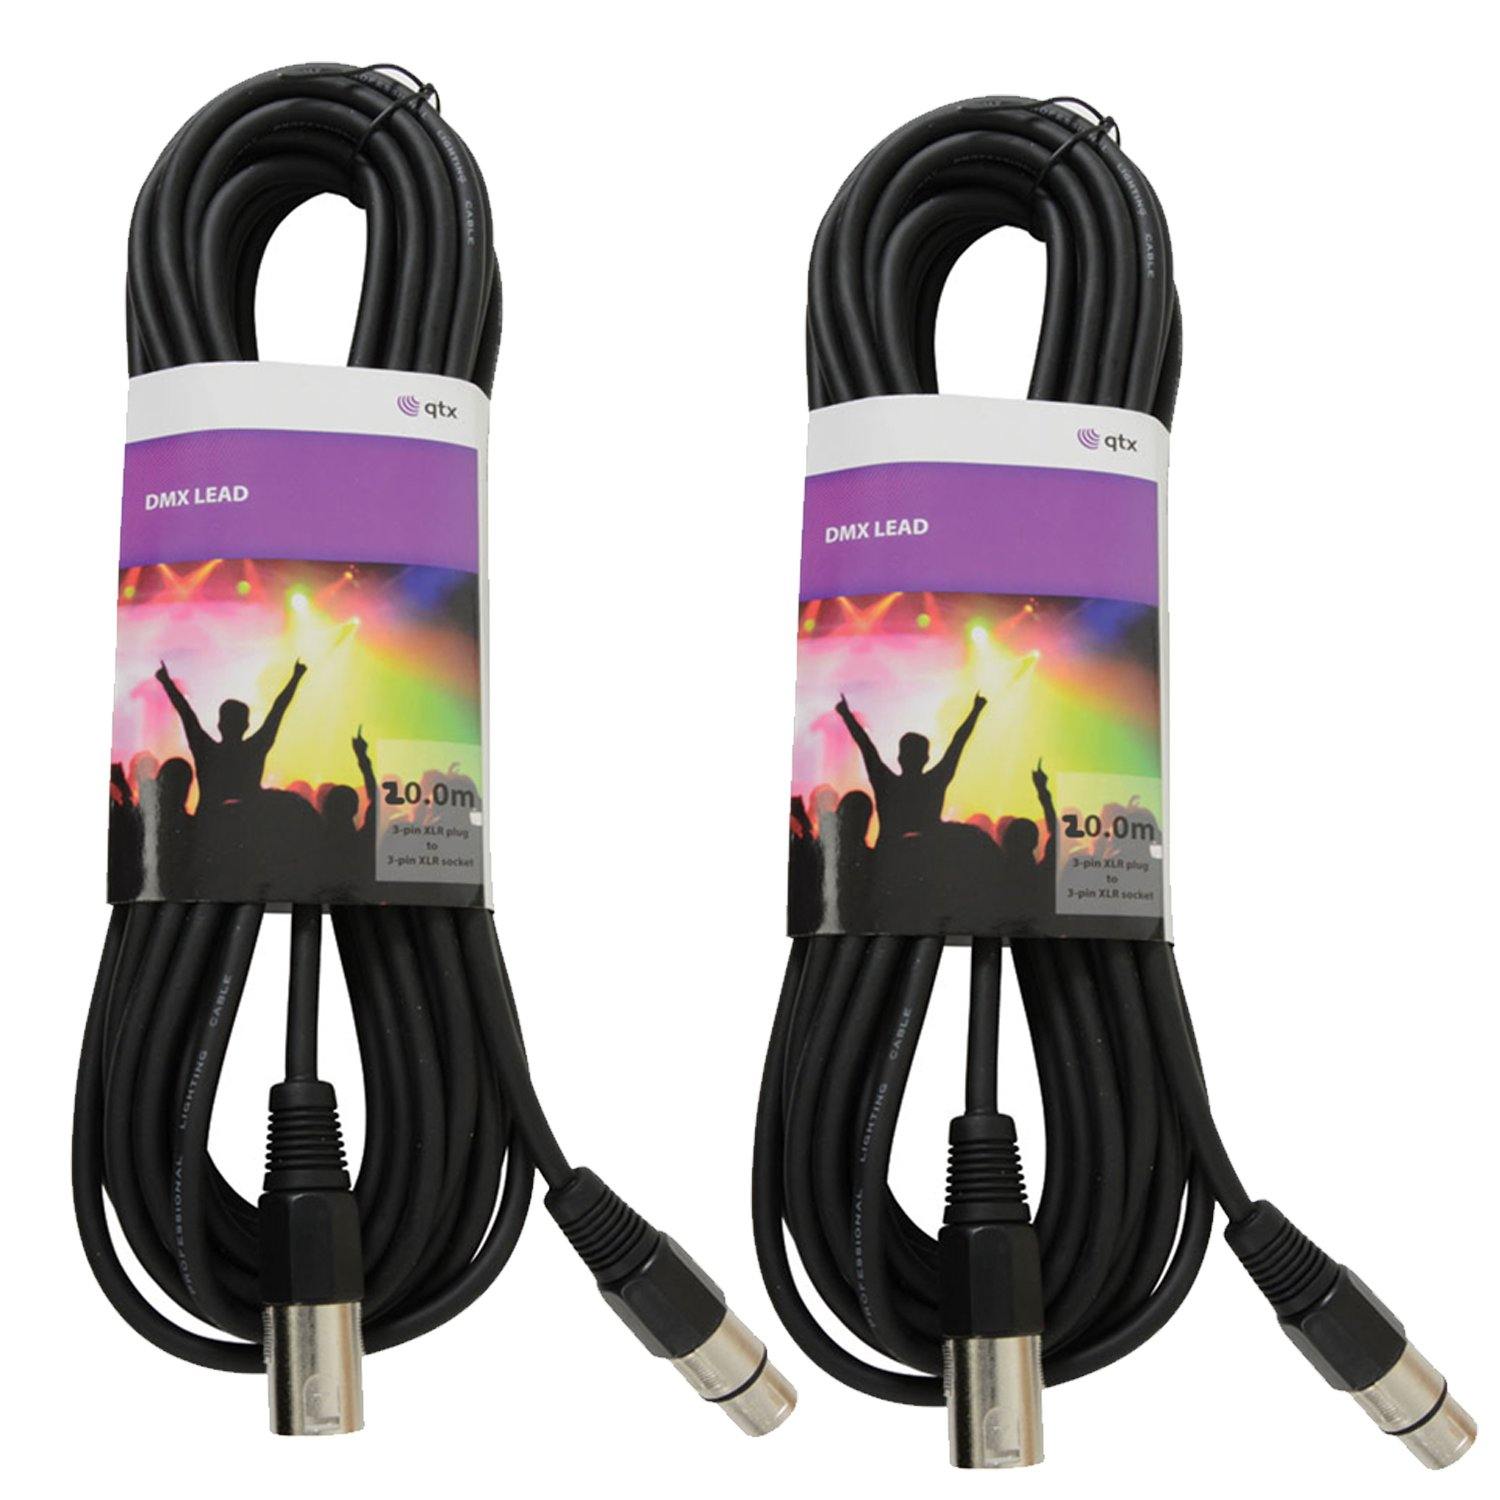 2 x QTX 20M DMX Lighting Cables - DY Pro Audio